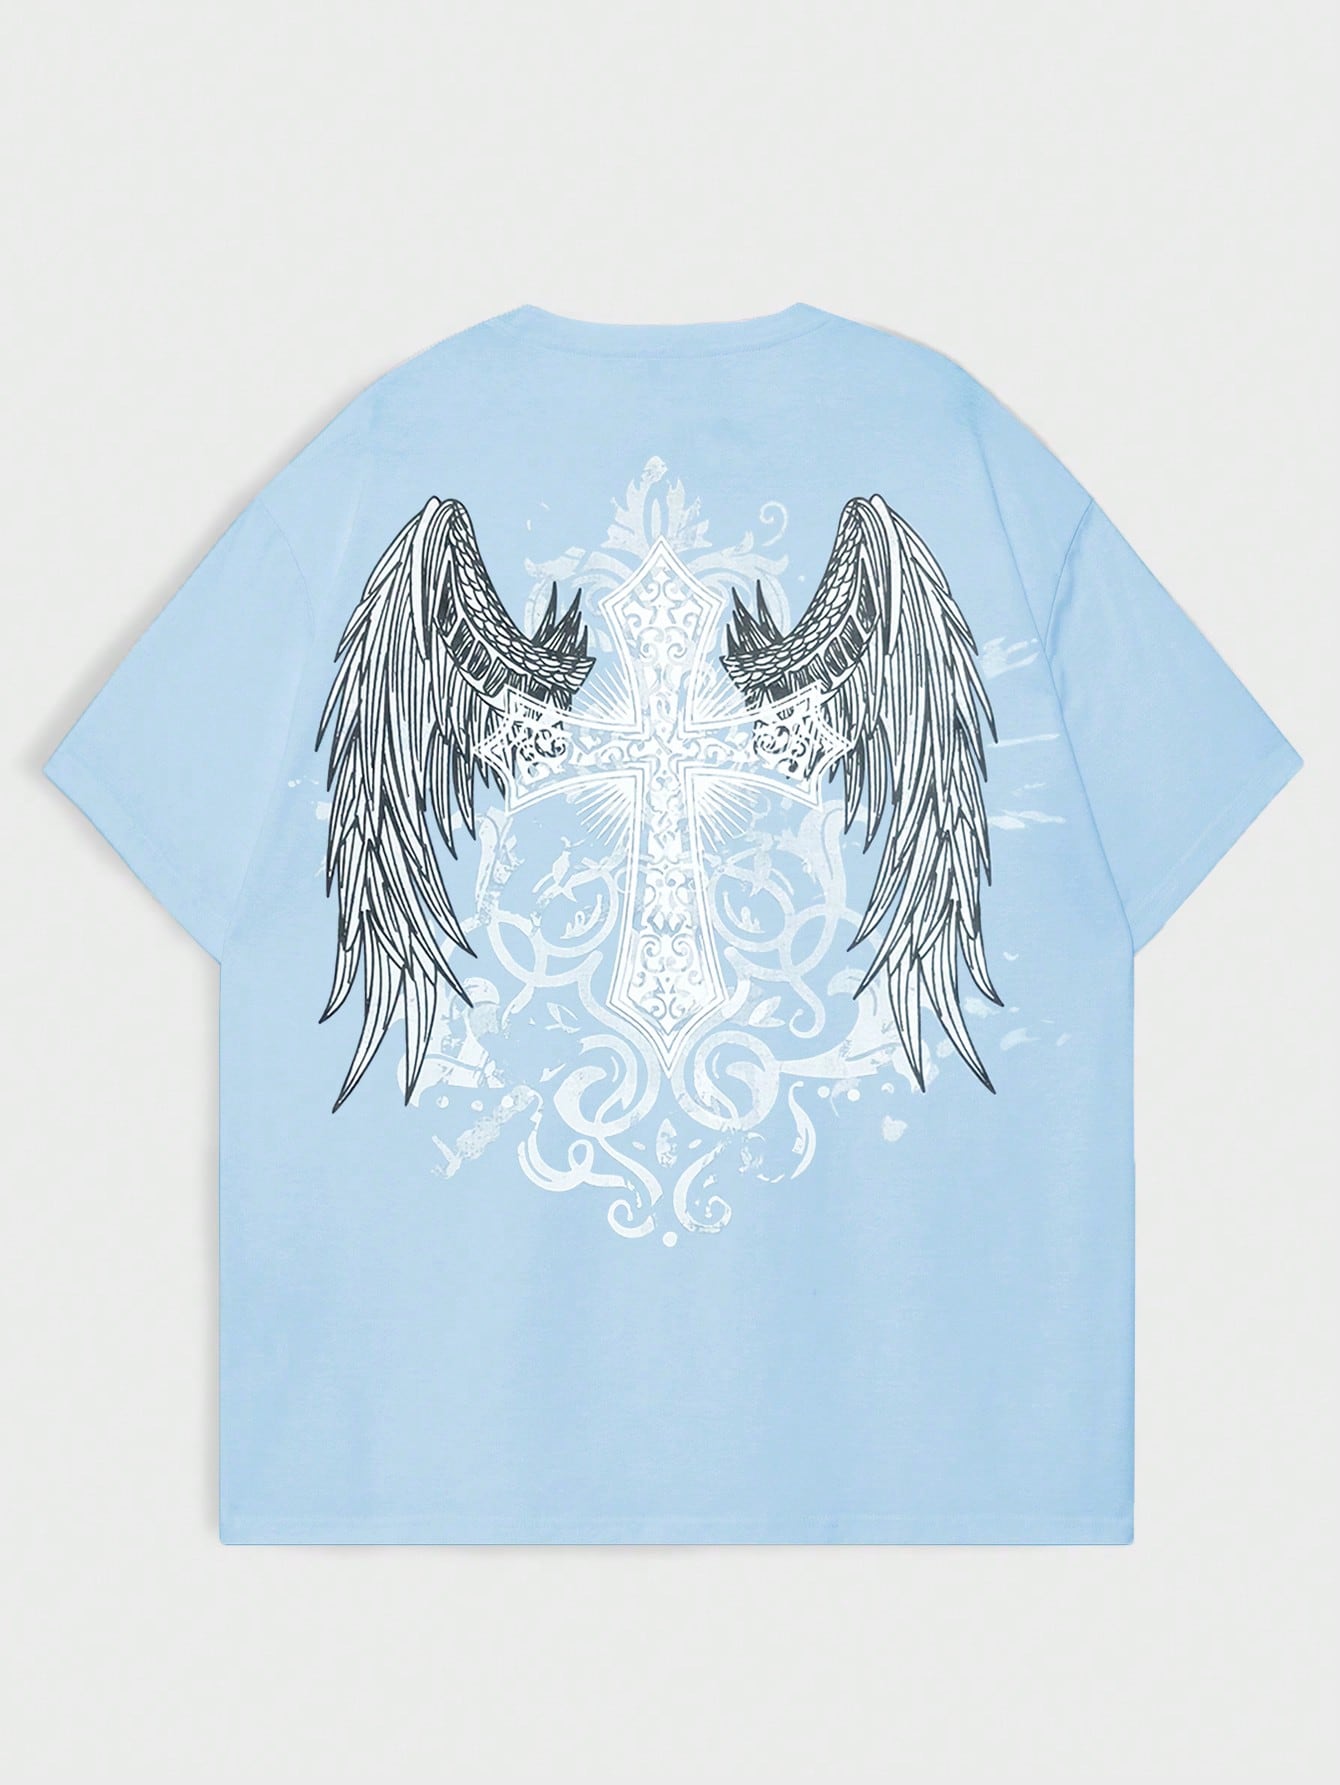 ROMWE Goth Мужская футболка с принтом снежинки и крестом для повседневной жизни, голубые